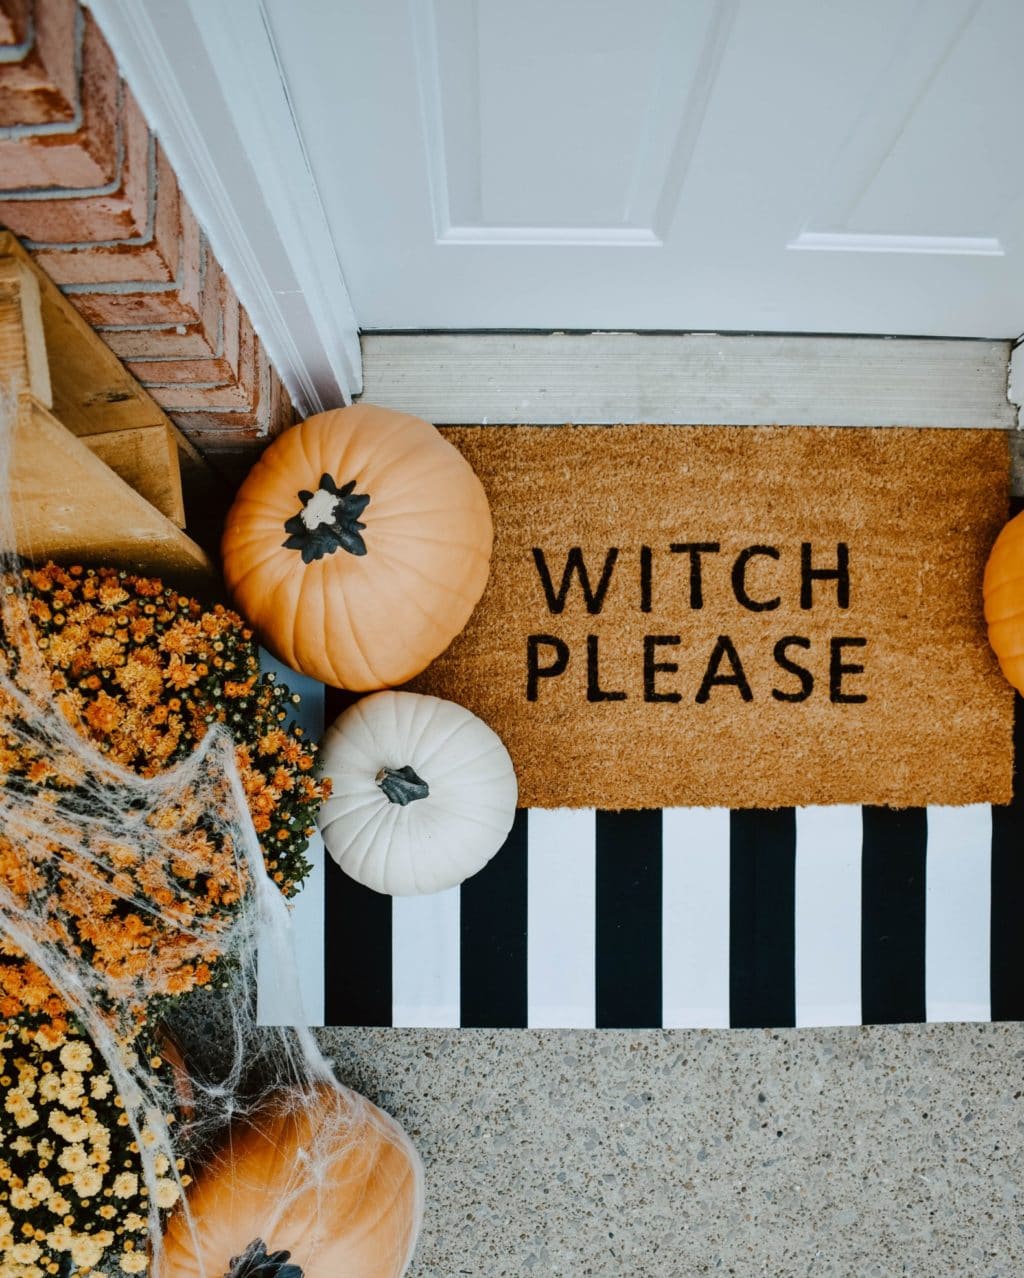 "Witch Please" doormat for Halloween